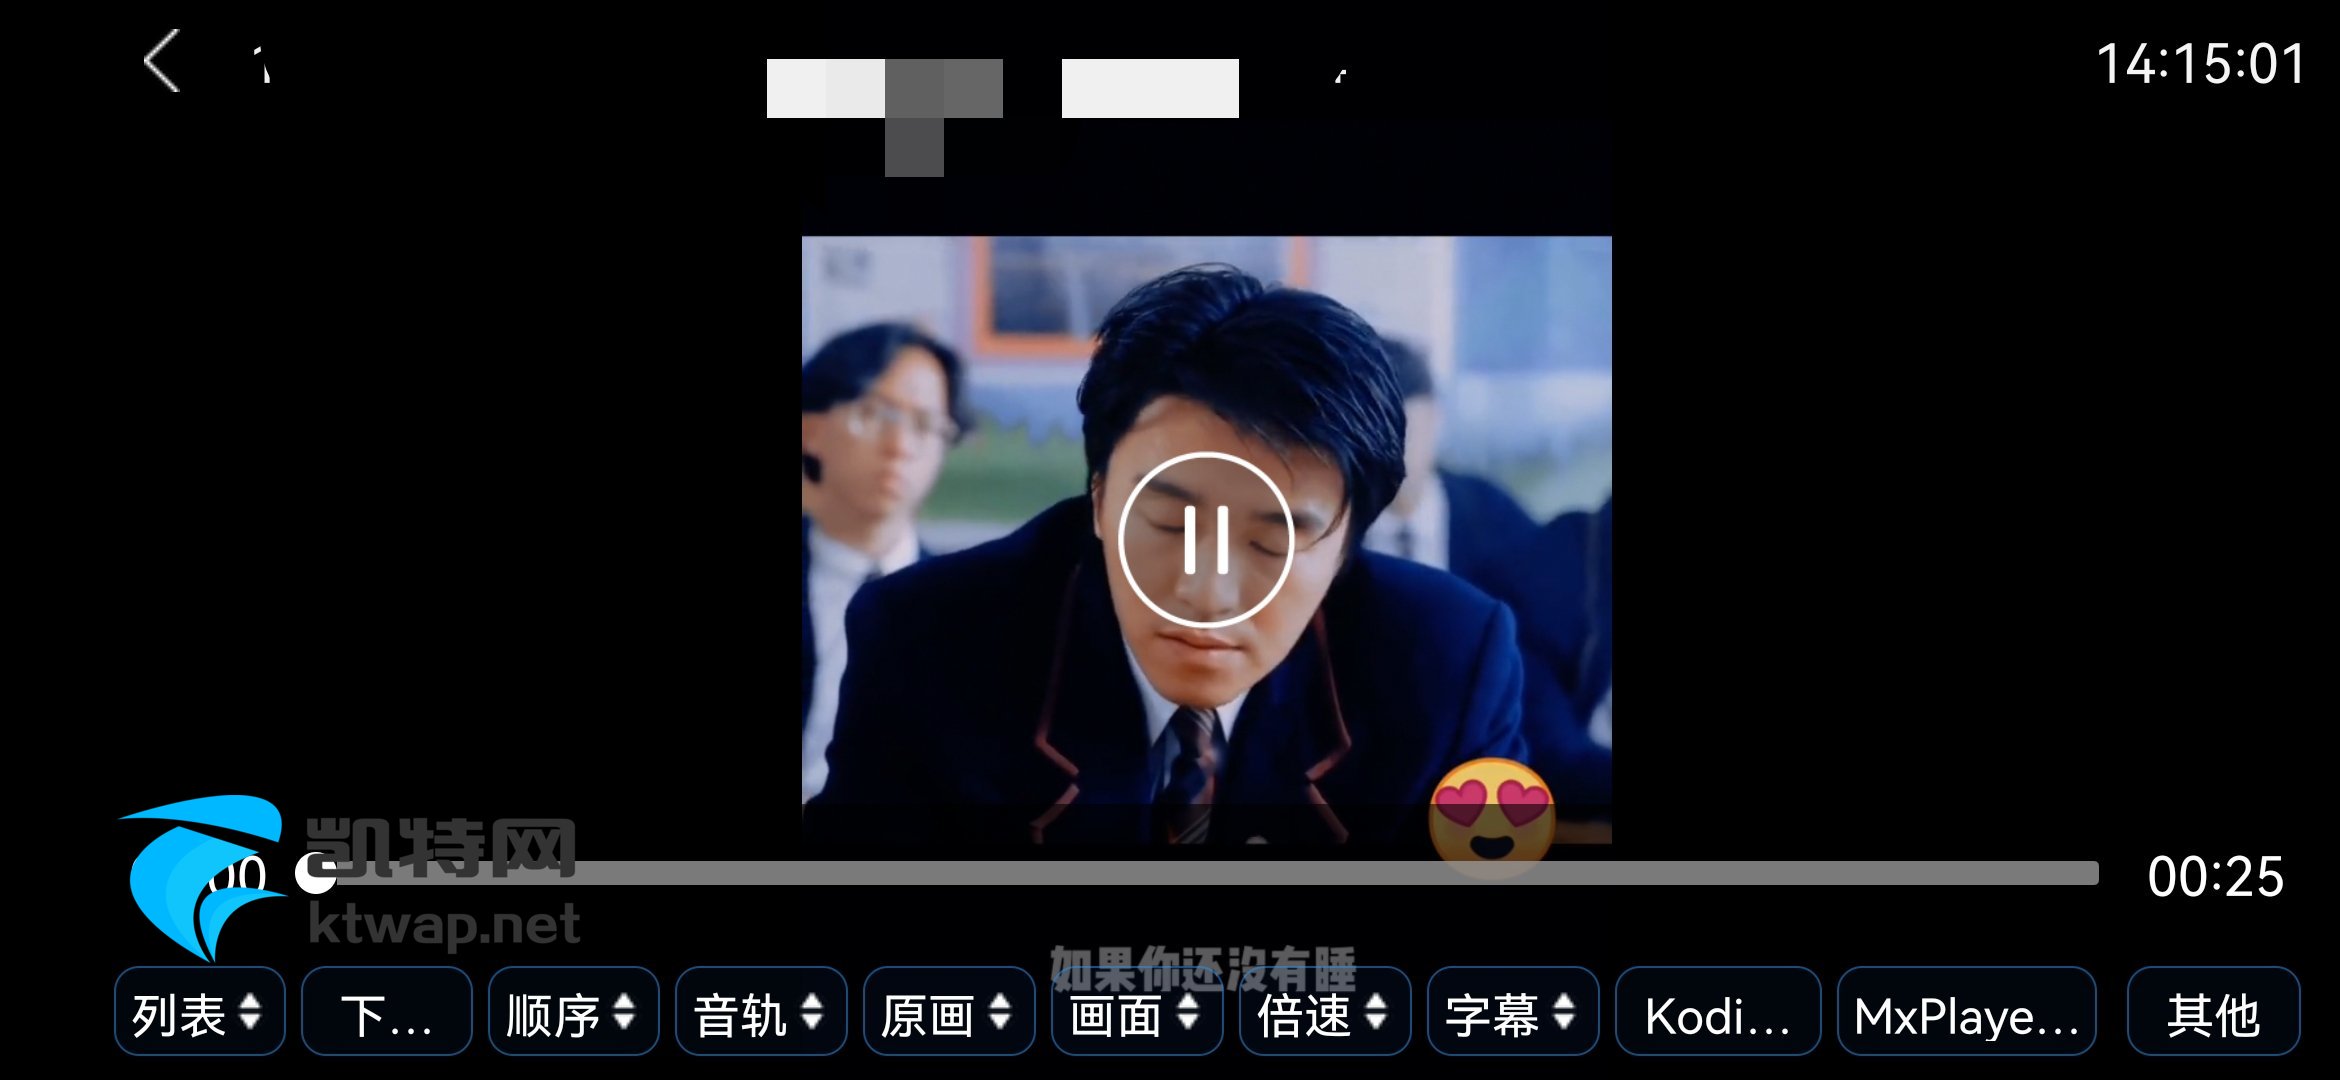 【资源分享】蜗牛云盘 TV版 V2.0.7 最新可用版